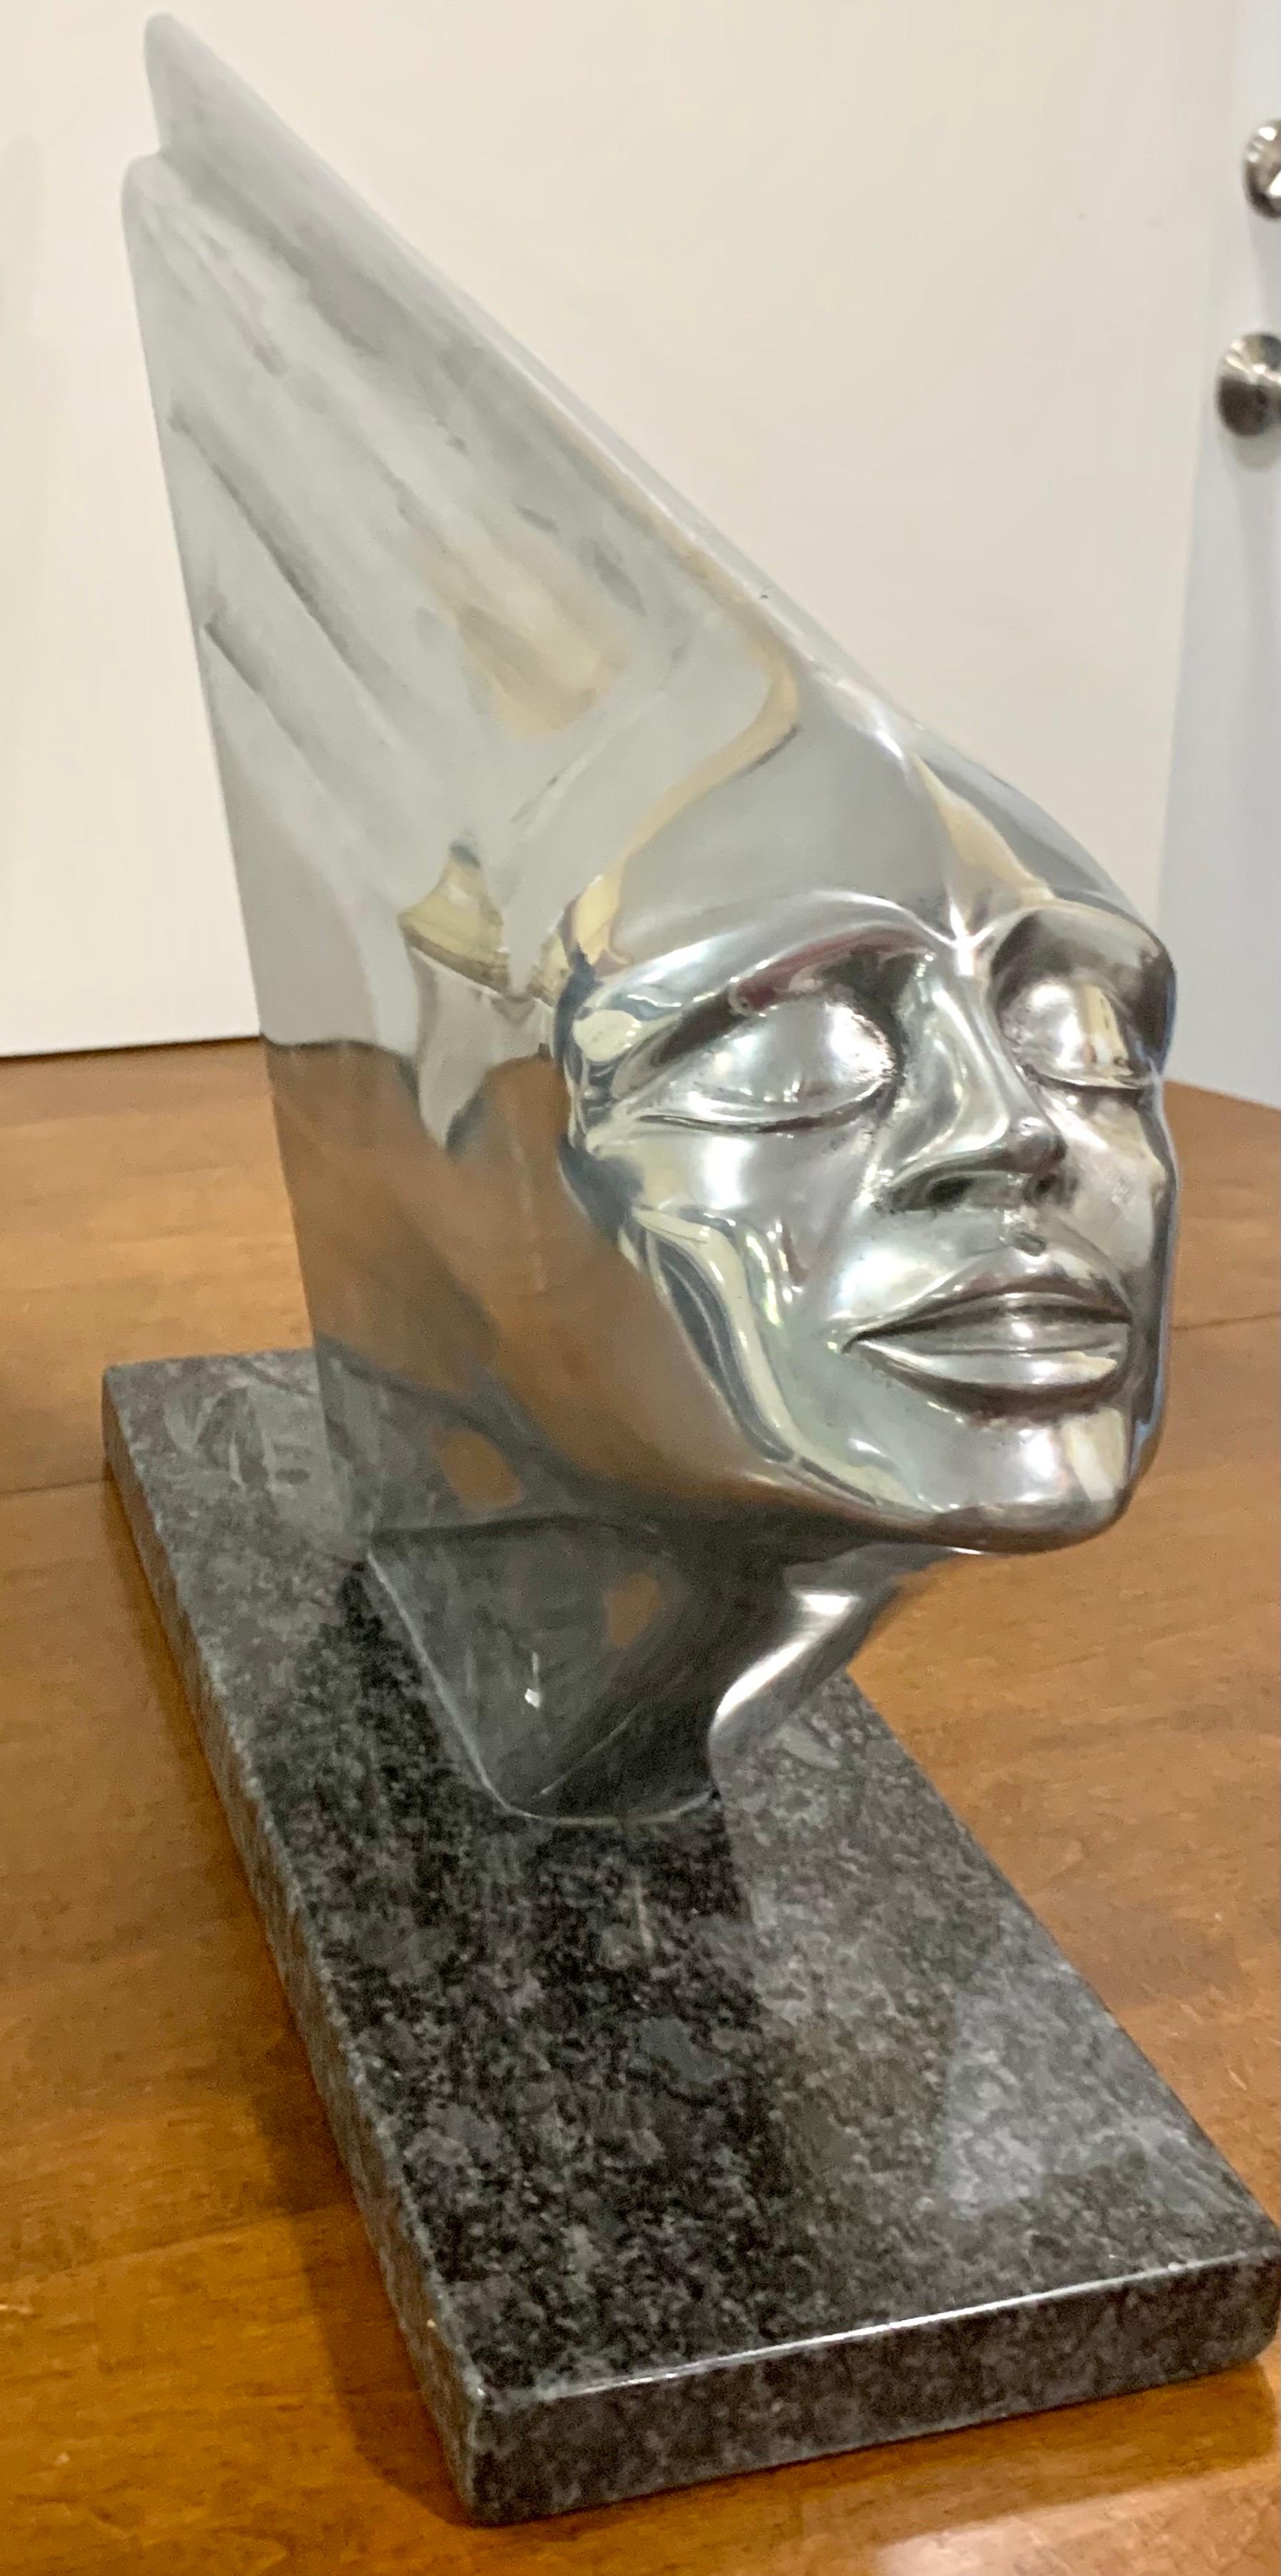 Superbe sculpture en aluminium et granit poli de Lee Duran (1941-2014). Cette œuvre d'art importante faisait partie des sculptures de sirènes de la série Chrome Goddess de Duran. Il n'existe que cinq exemplaires de cette sculpture et cinq autres